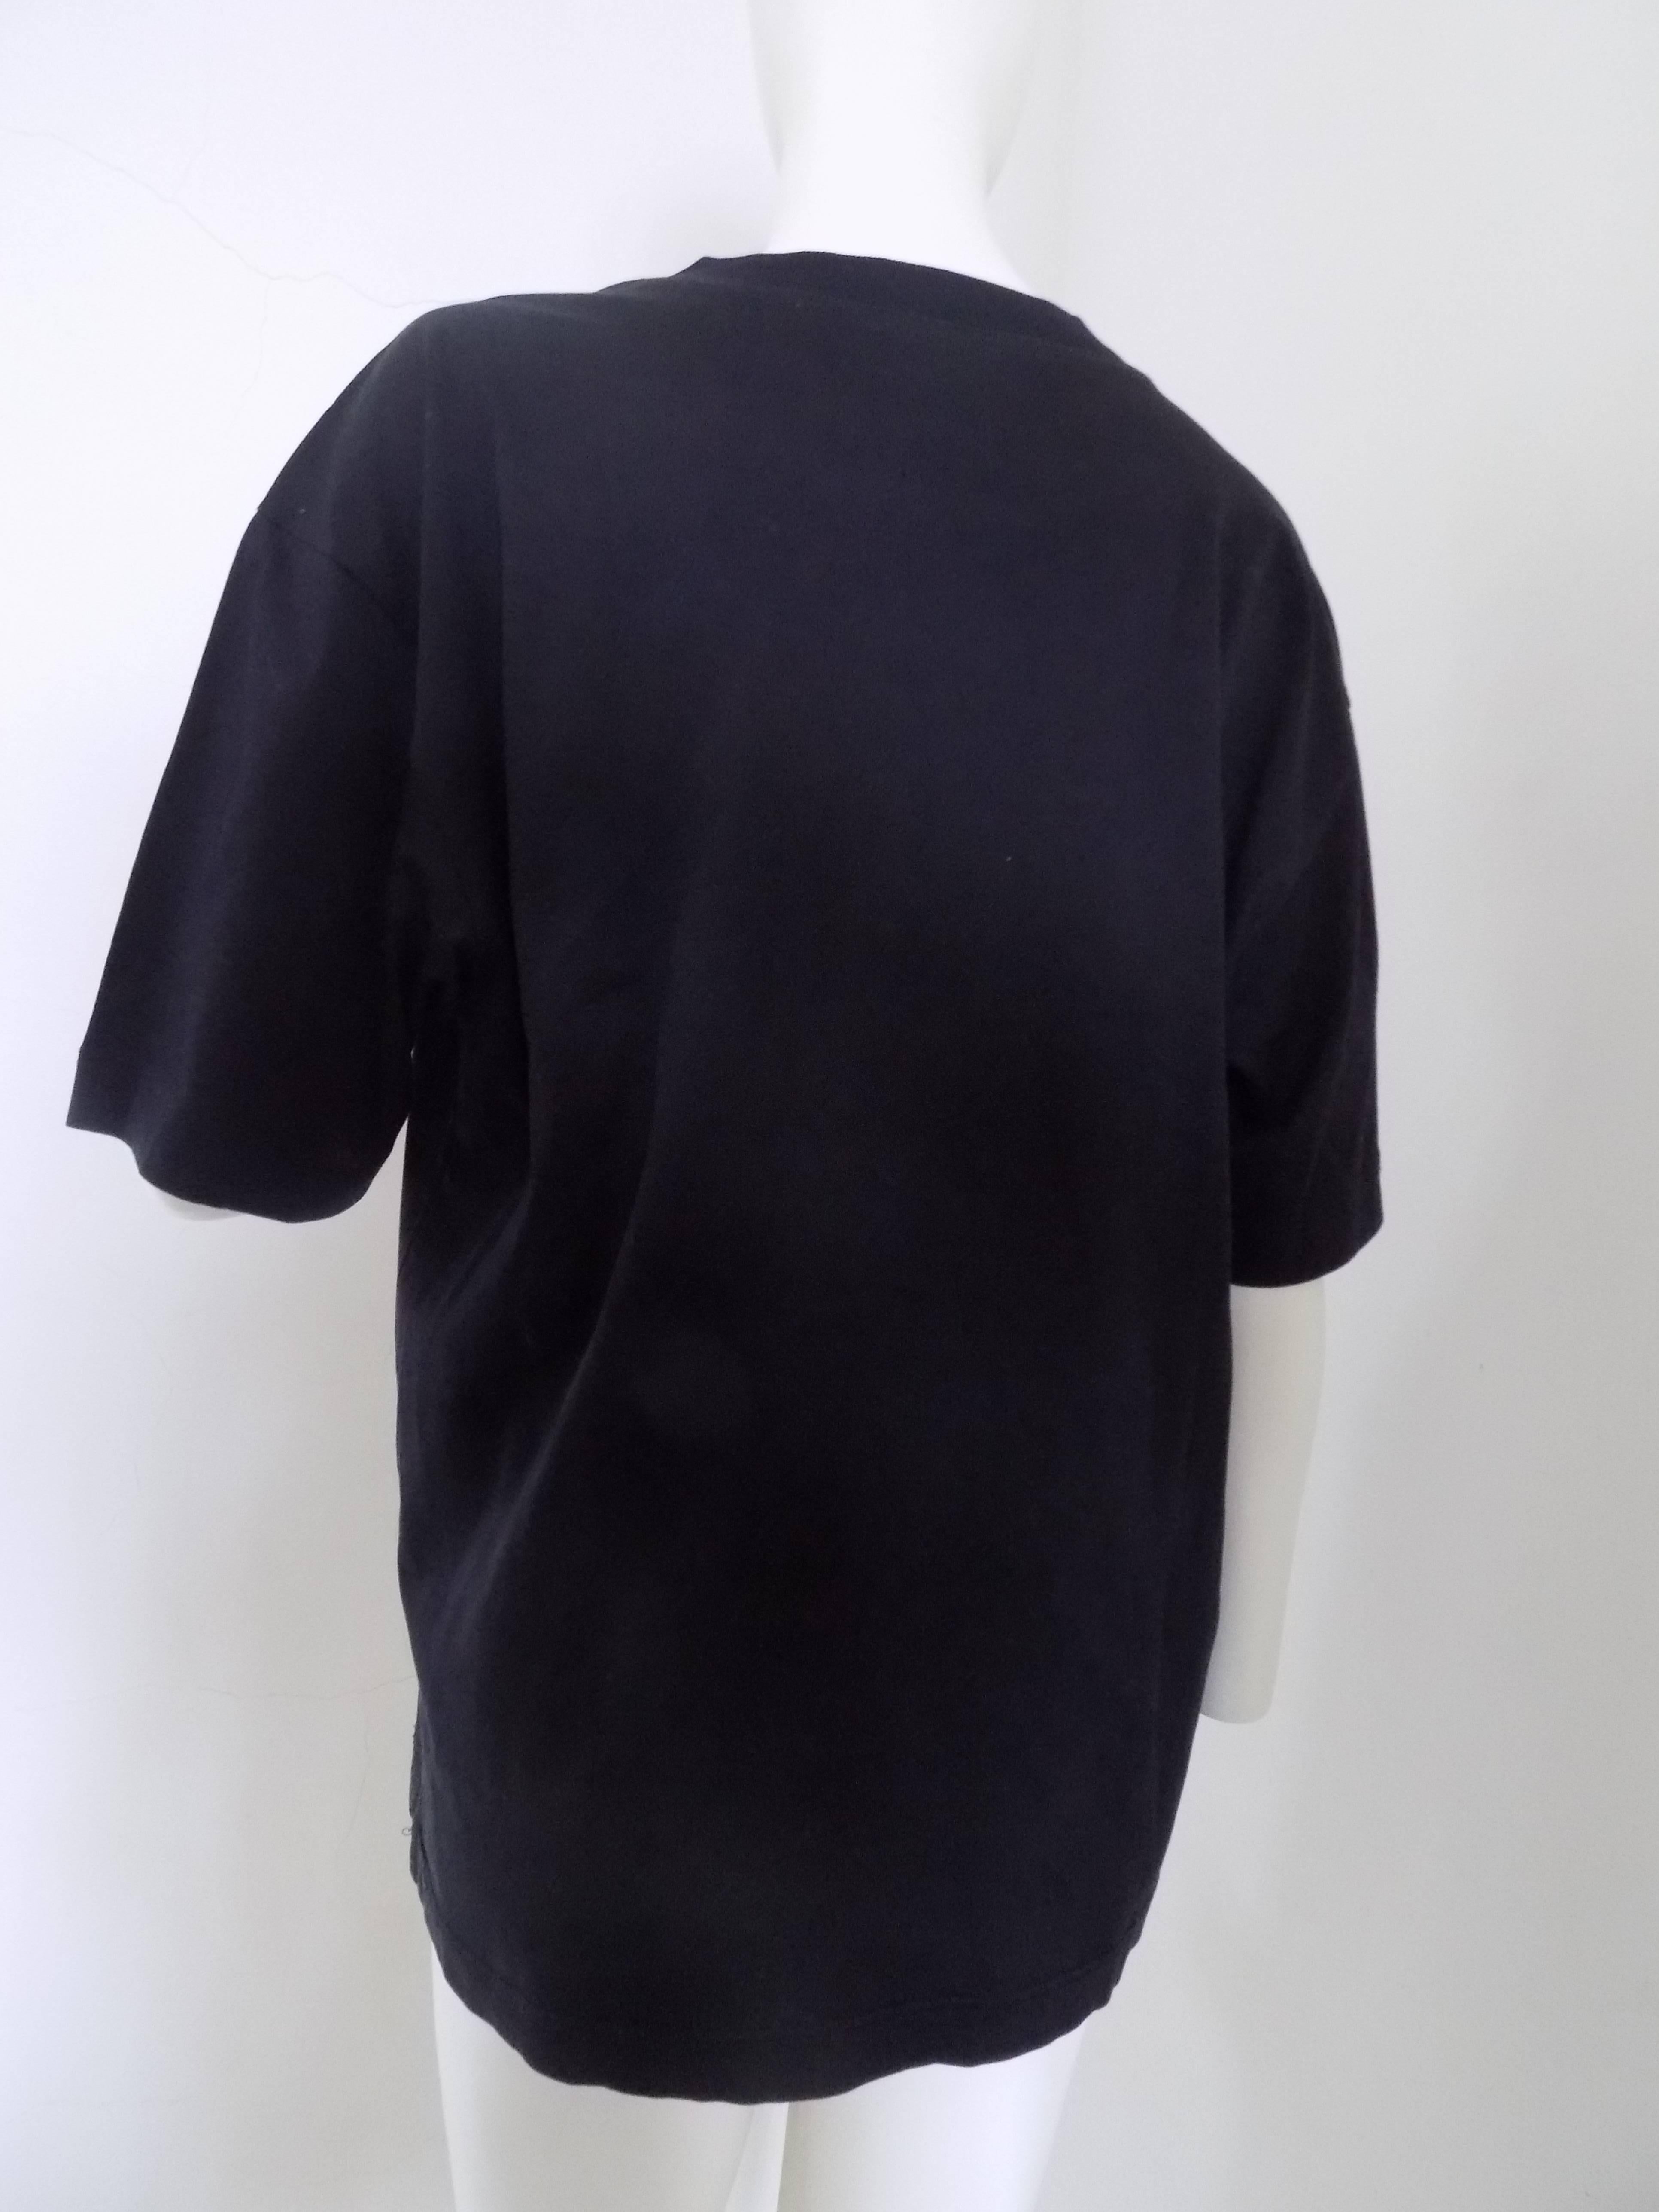 Women's or Men's Salvatore Ferragamo black shirt